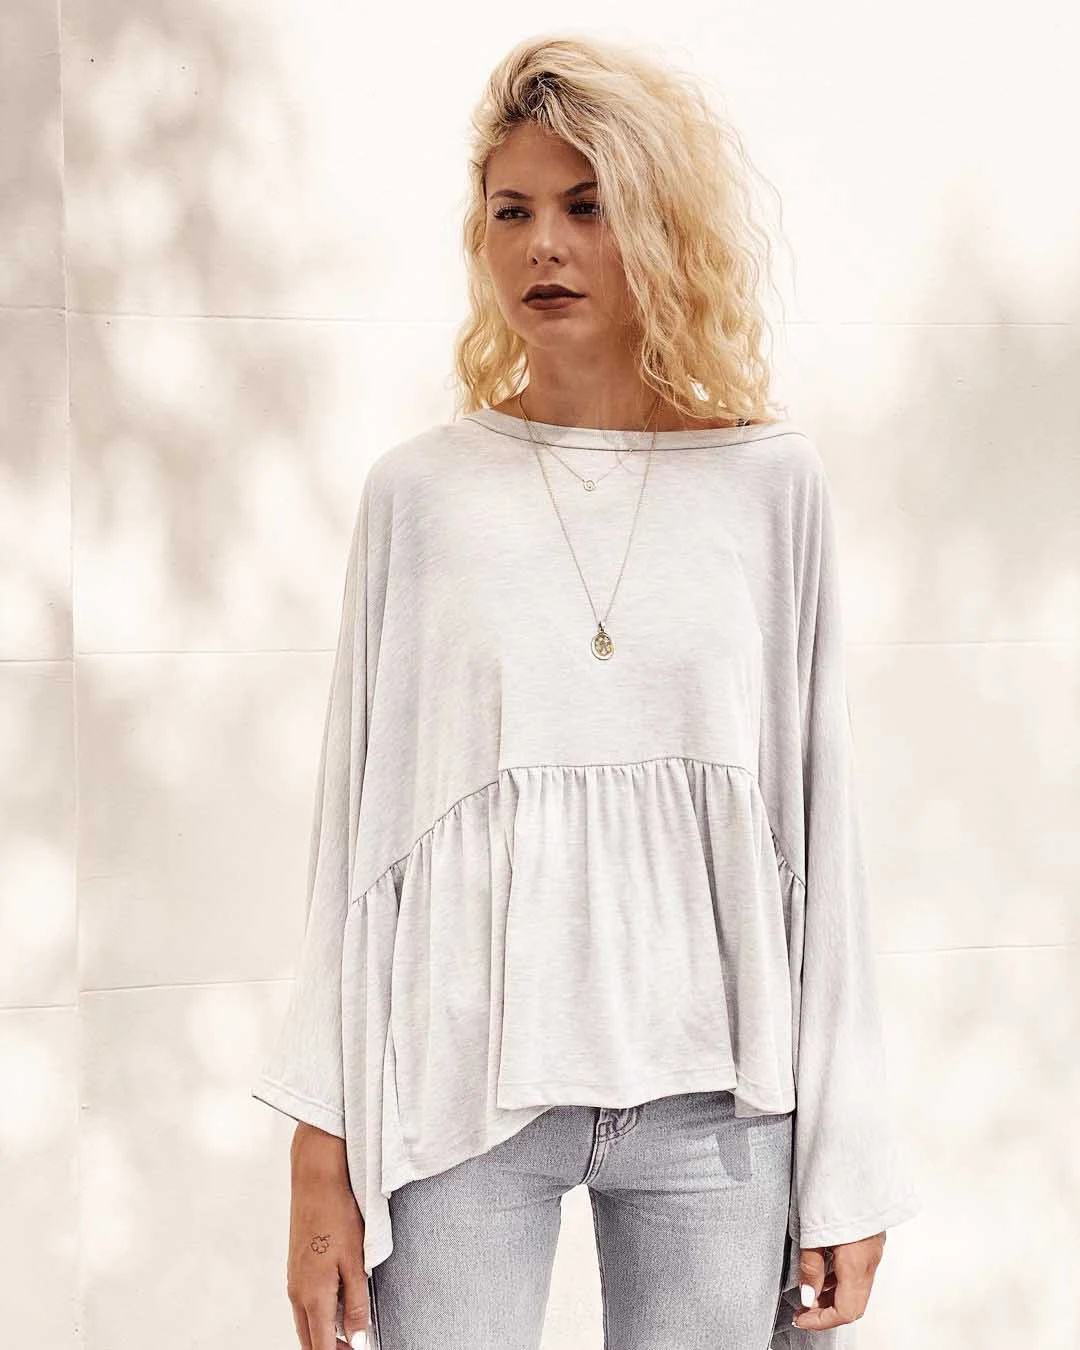 remeron remera blusa de algodon invierno 2021 moda mujer